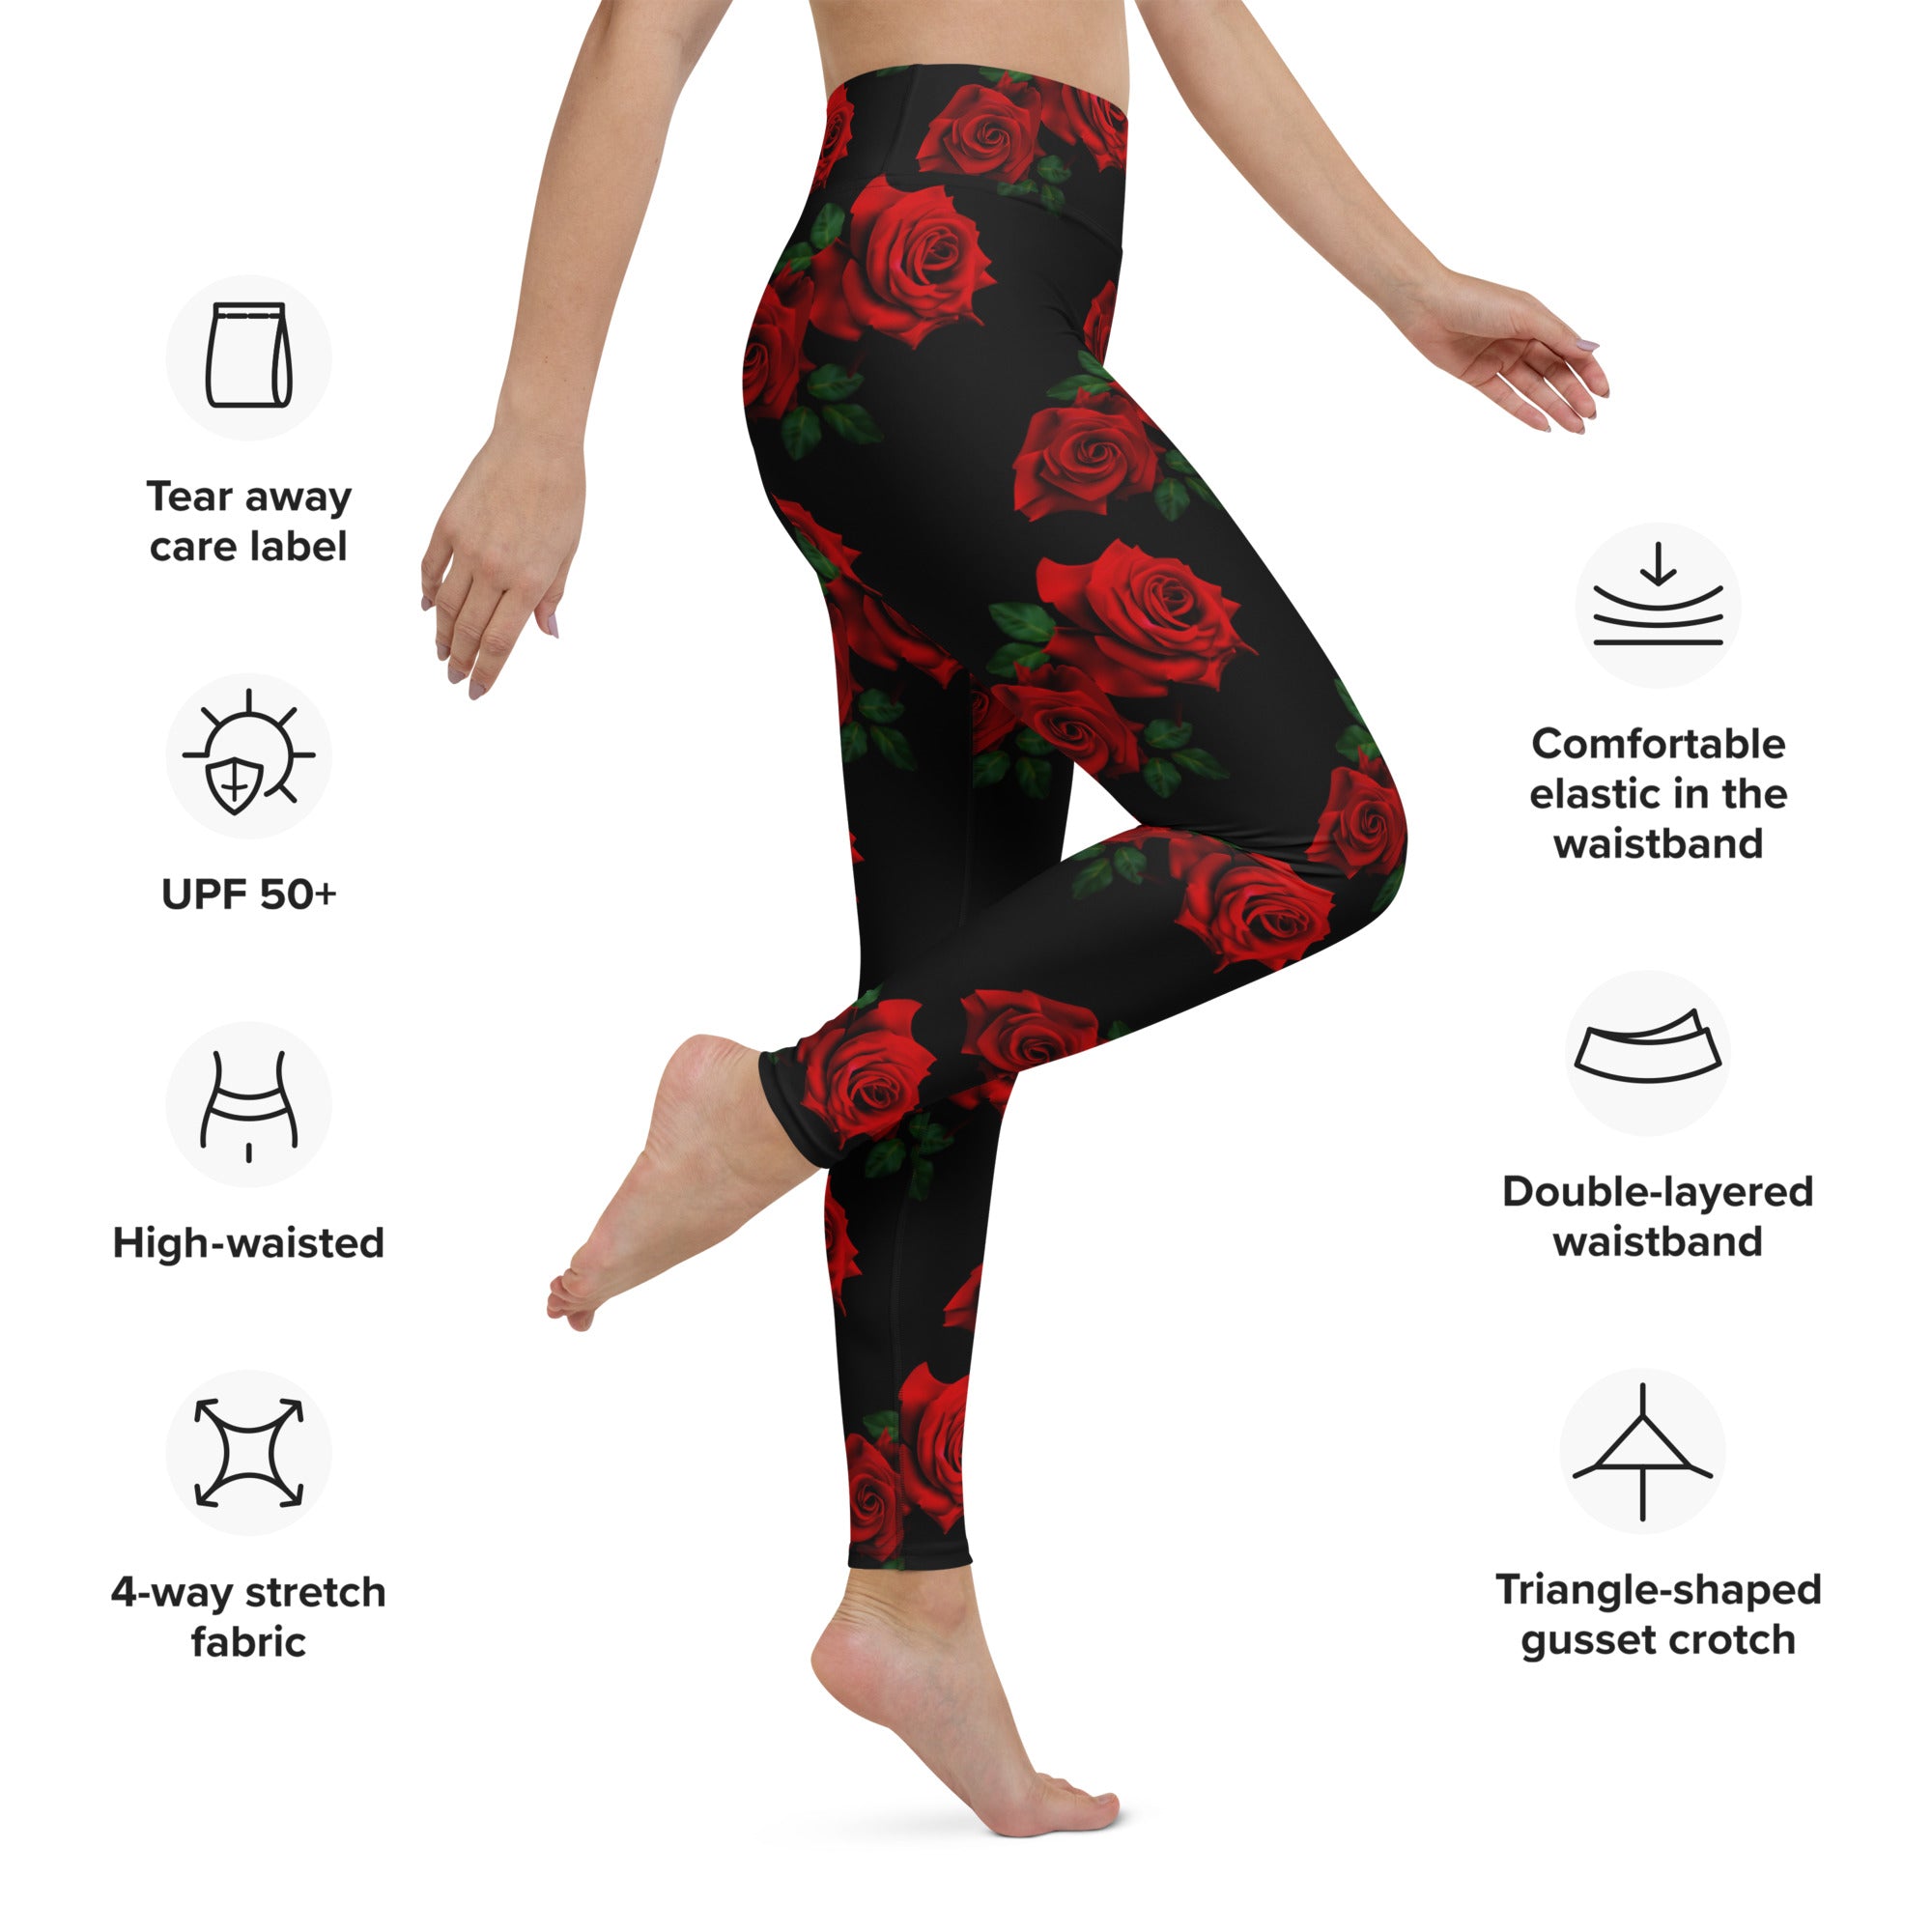 Red Roses Yoga Leggings